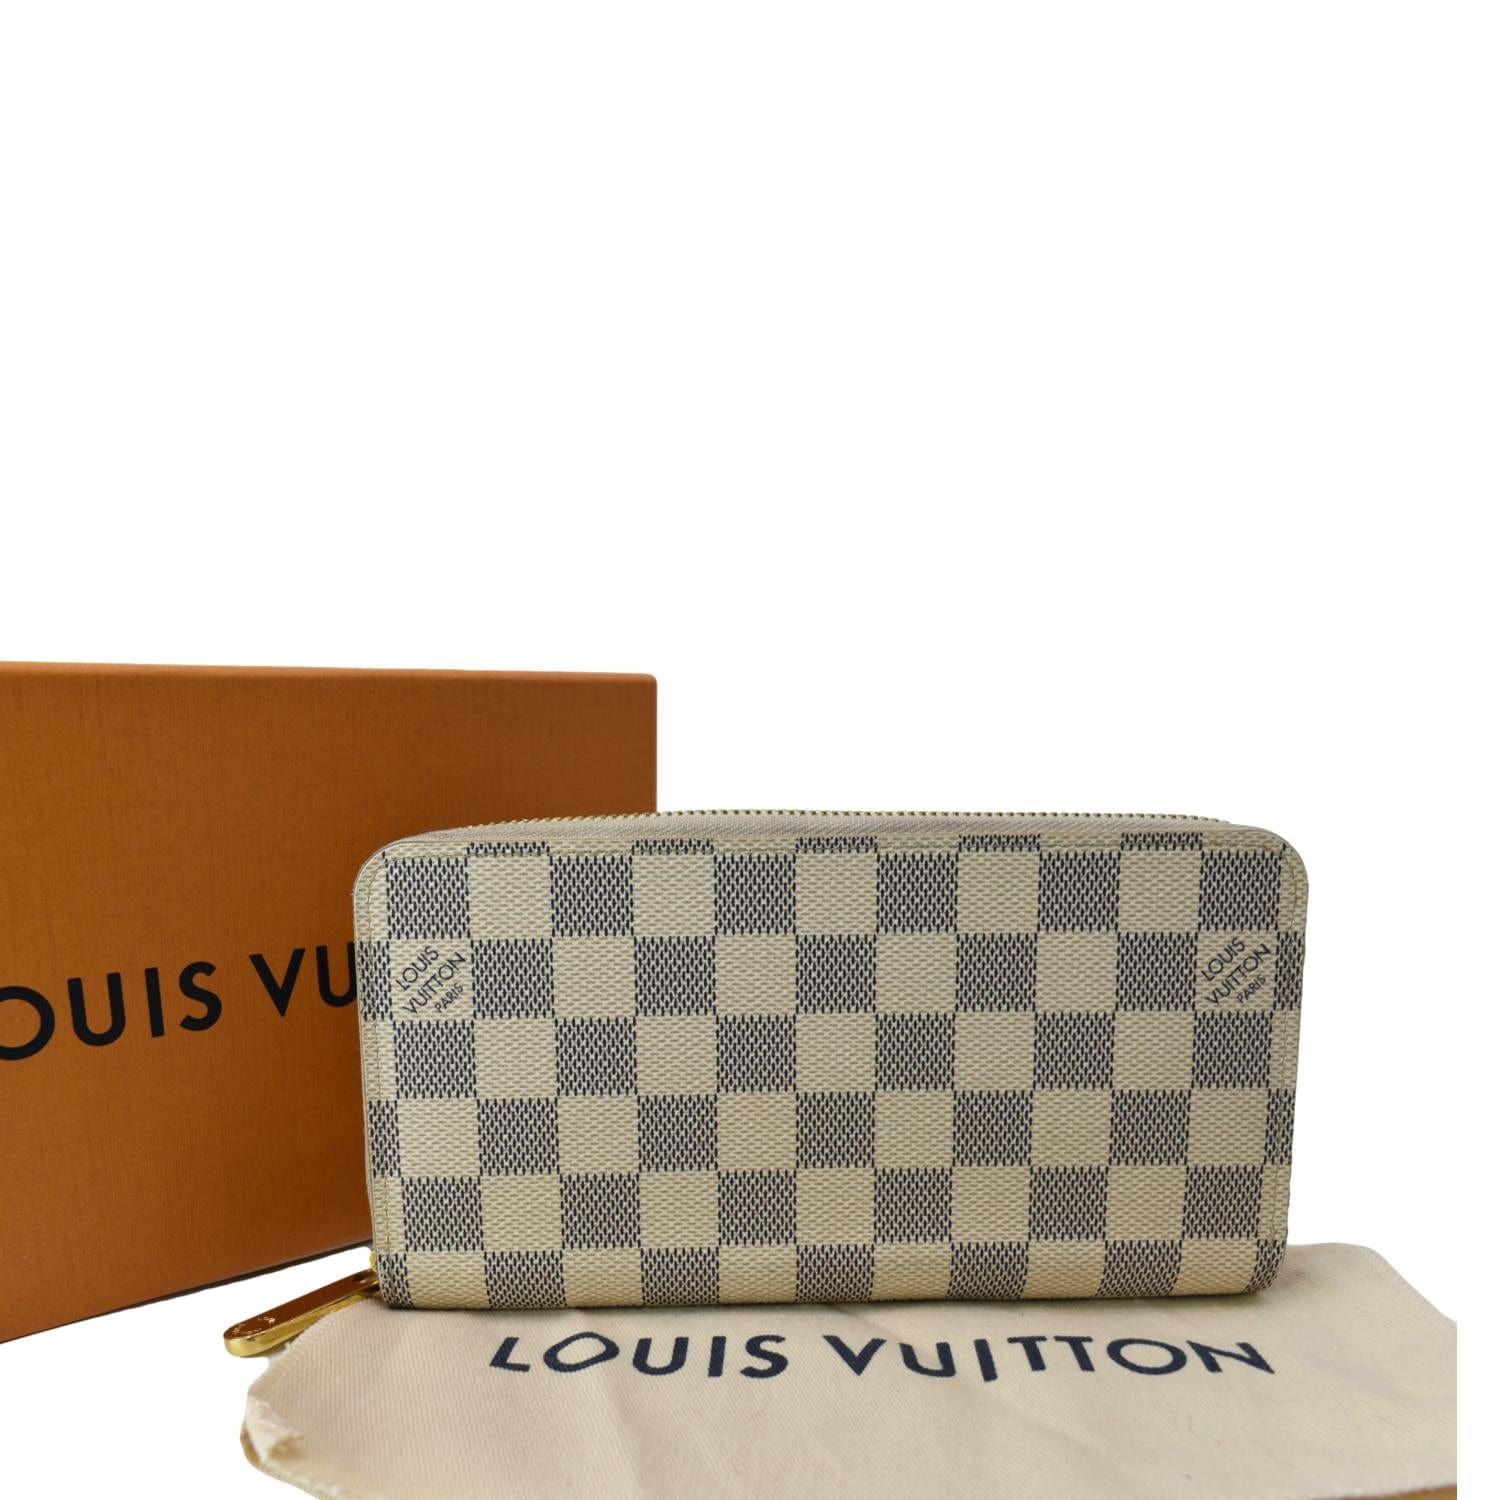 Luis Vuitton Wallet Dupe 